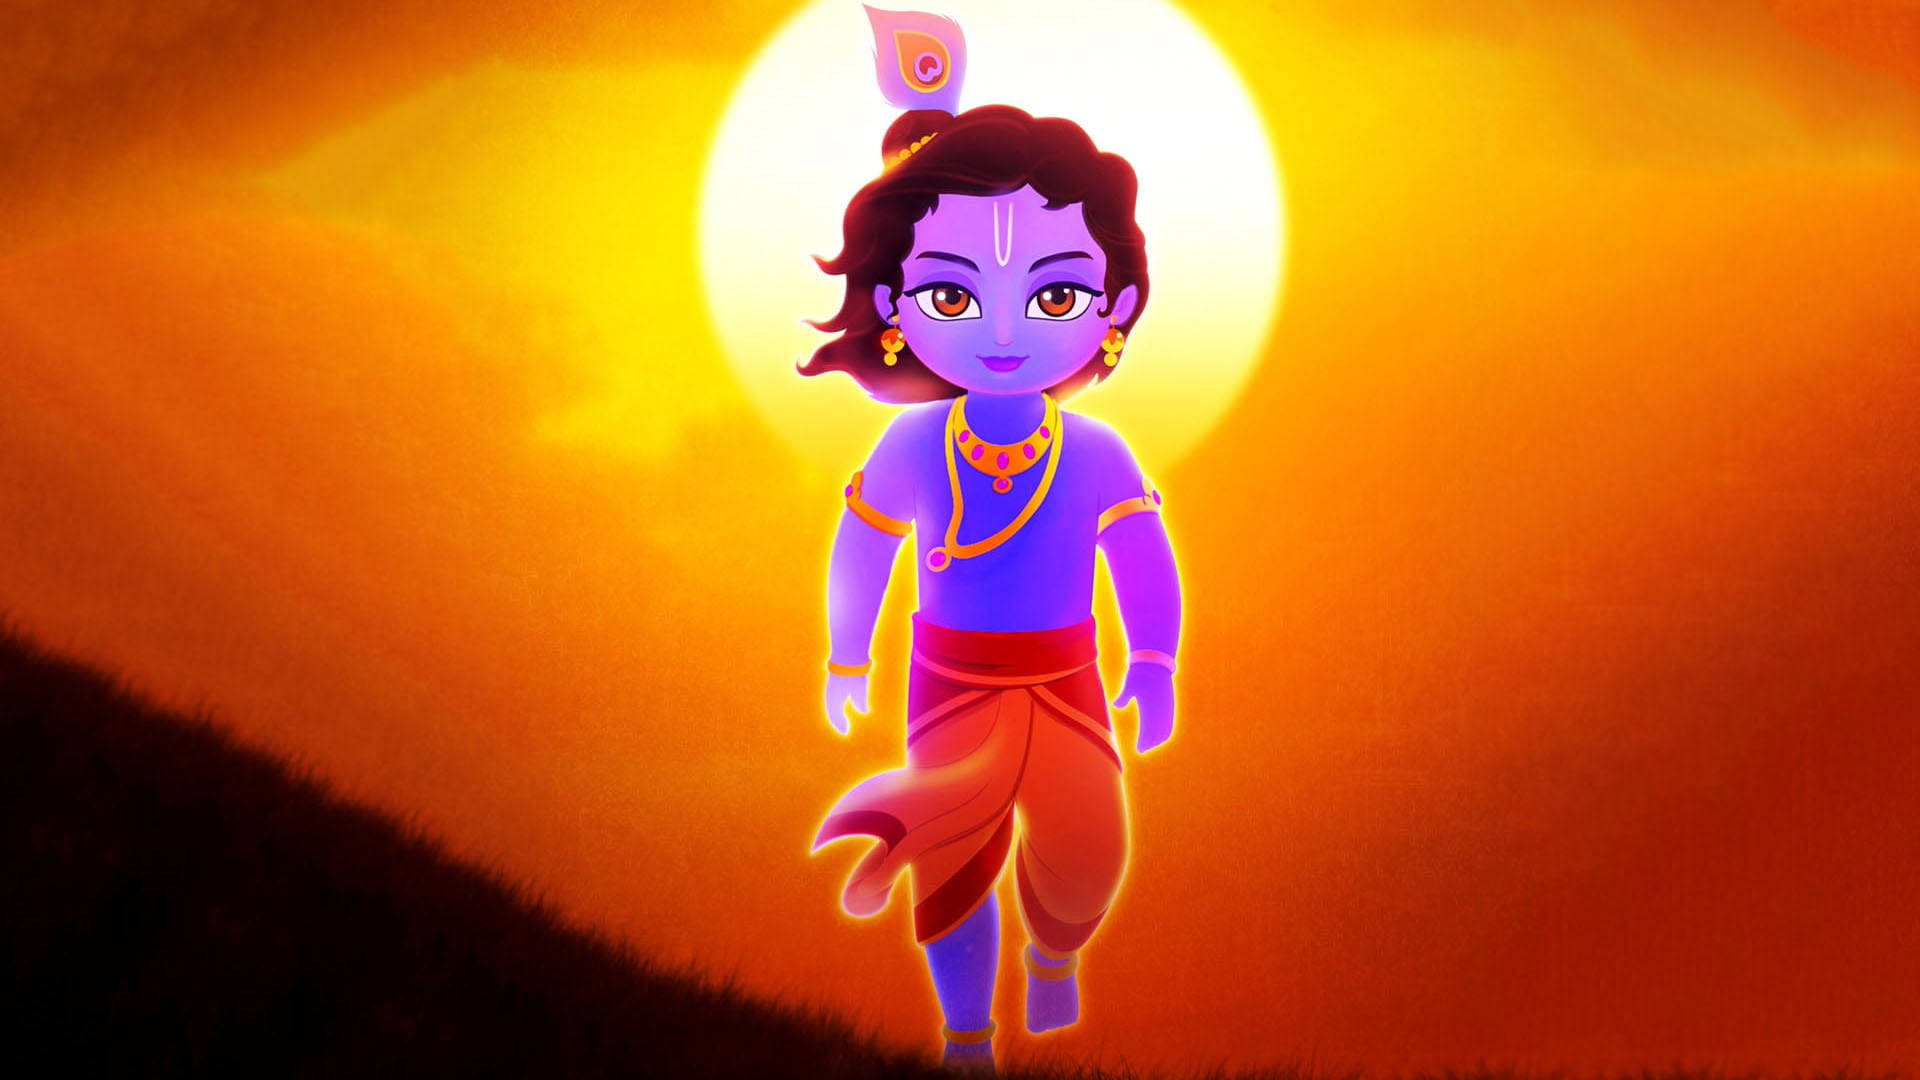 Young Shri Krishna Against Sunset Background